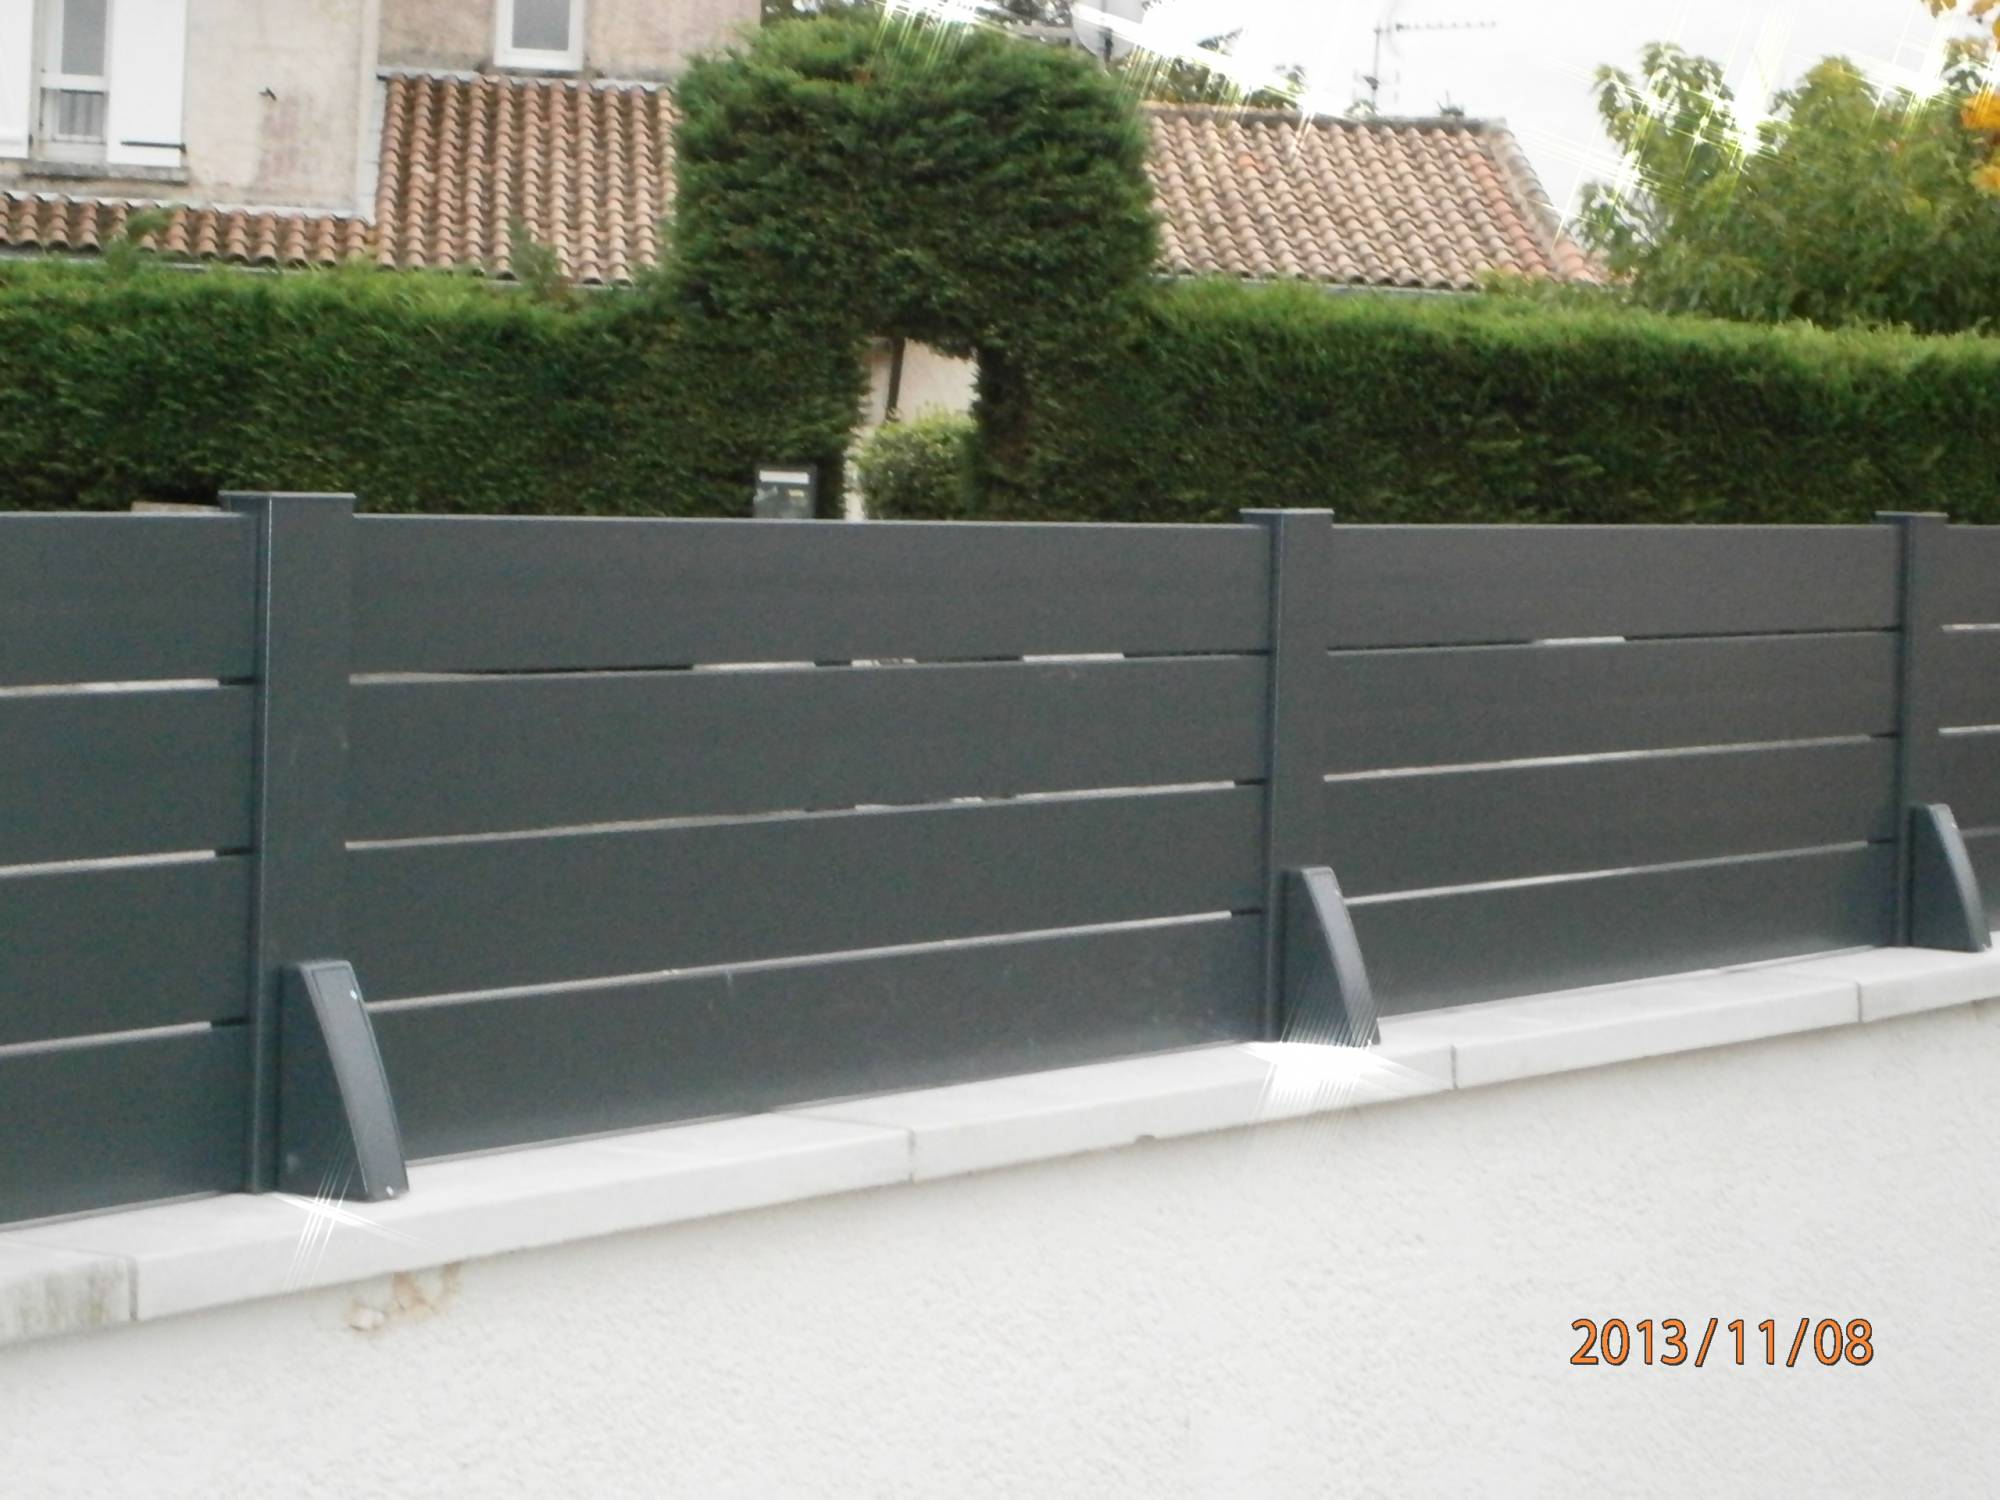 Fabrication sur mesure pour cette clôture aux lames ajourées en aluminium dans le Tarn